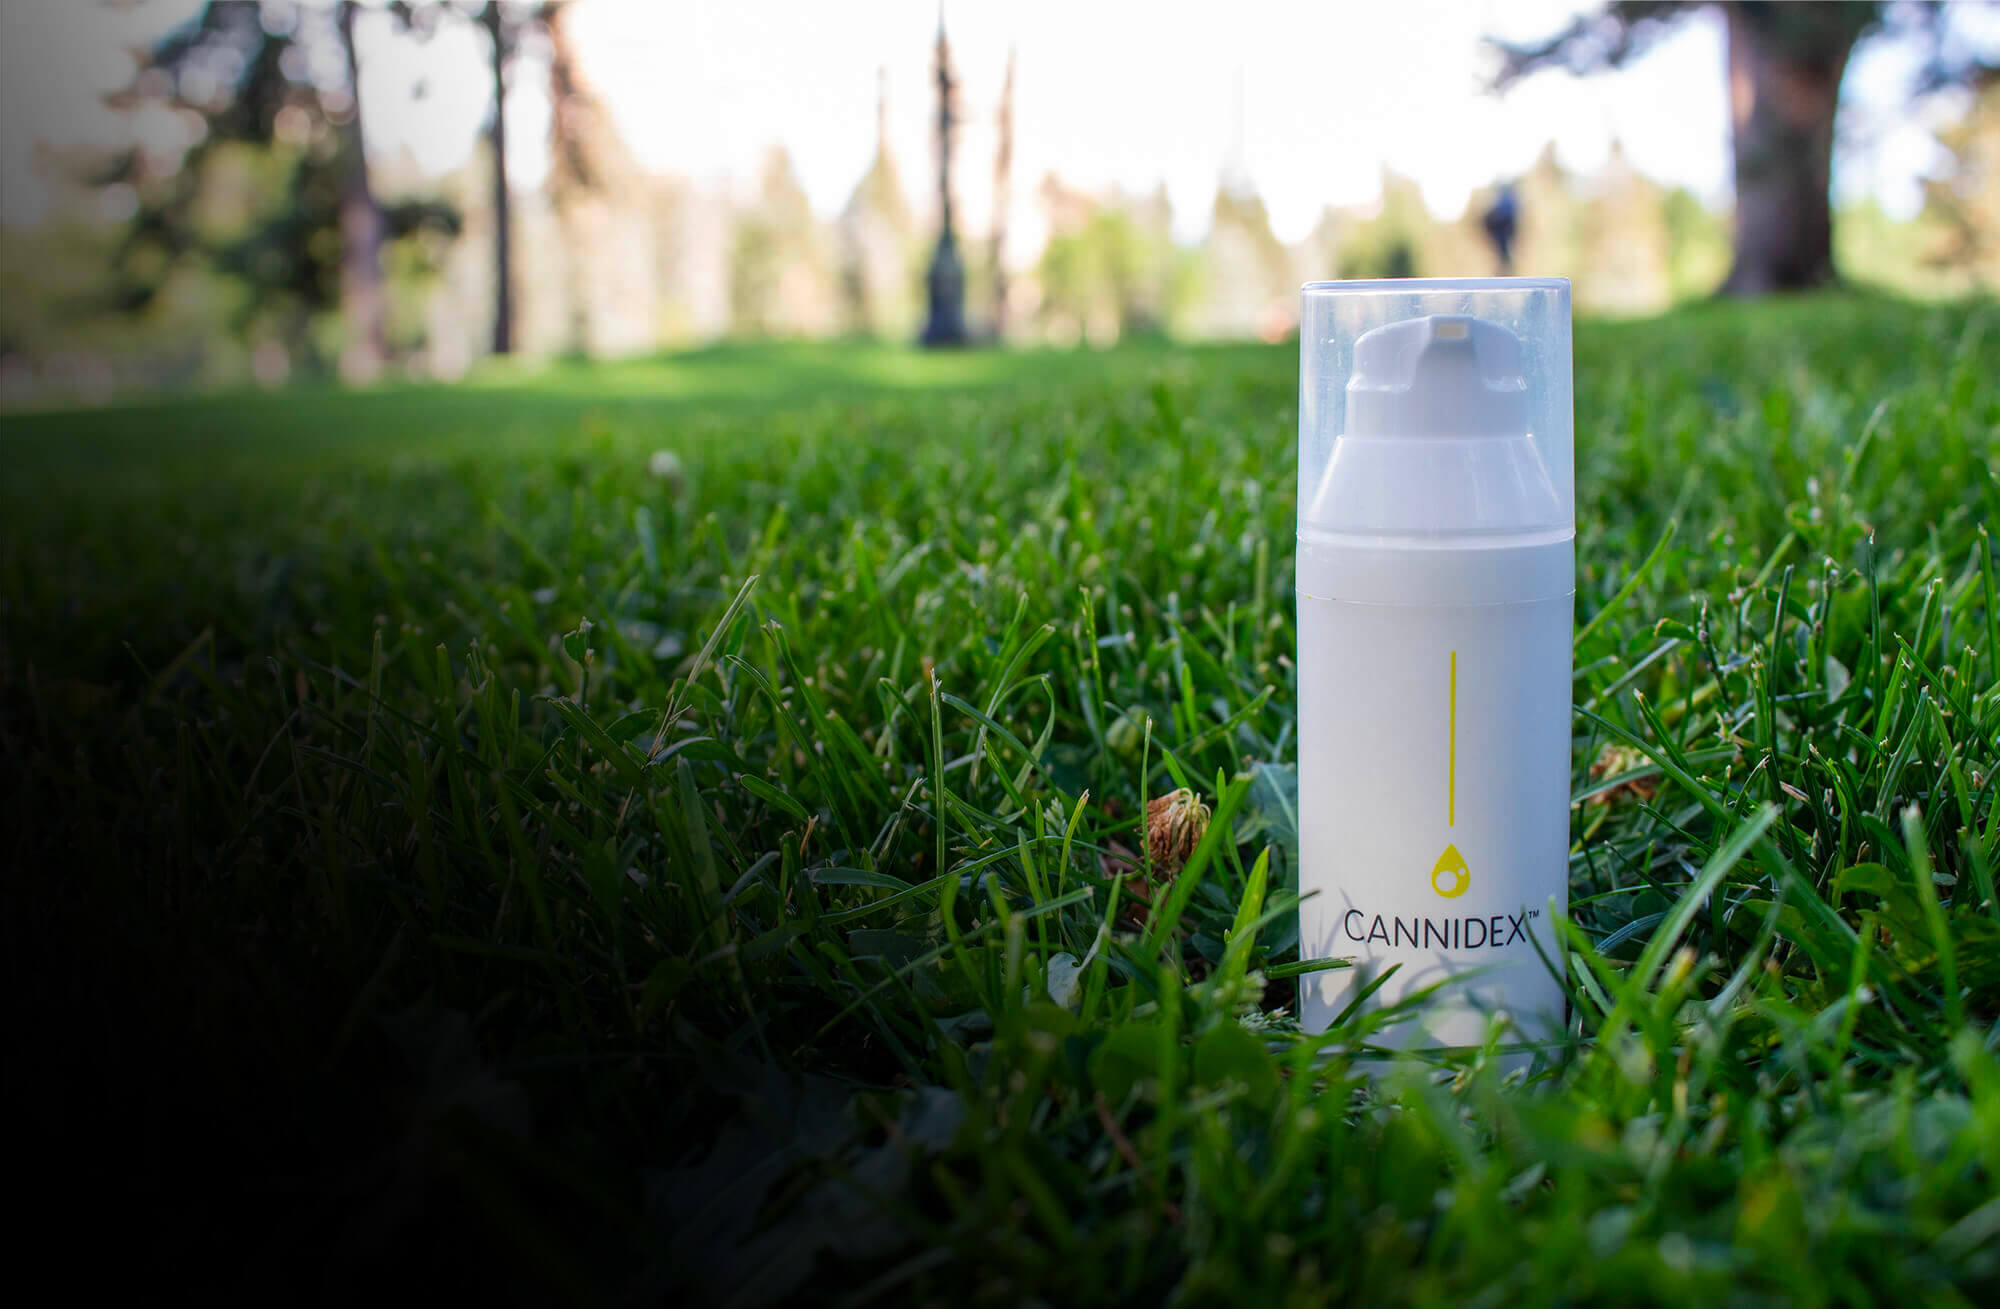 cannidex bottle on grass